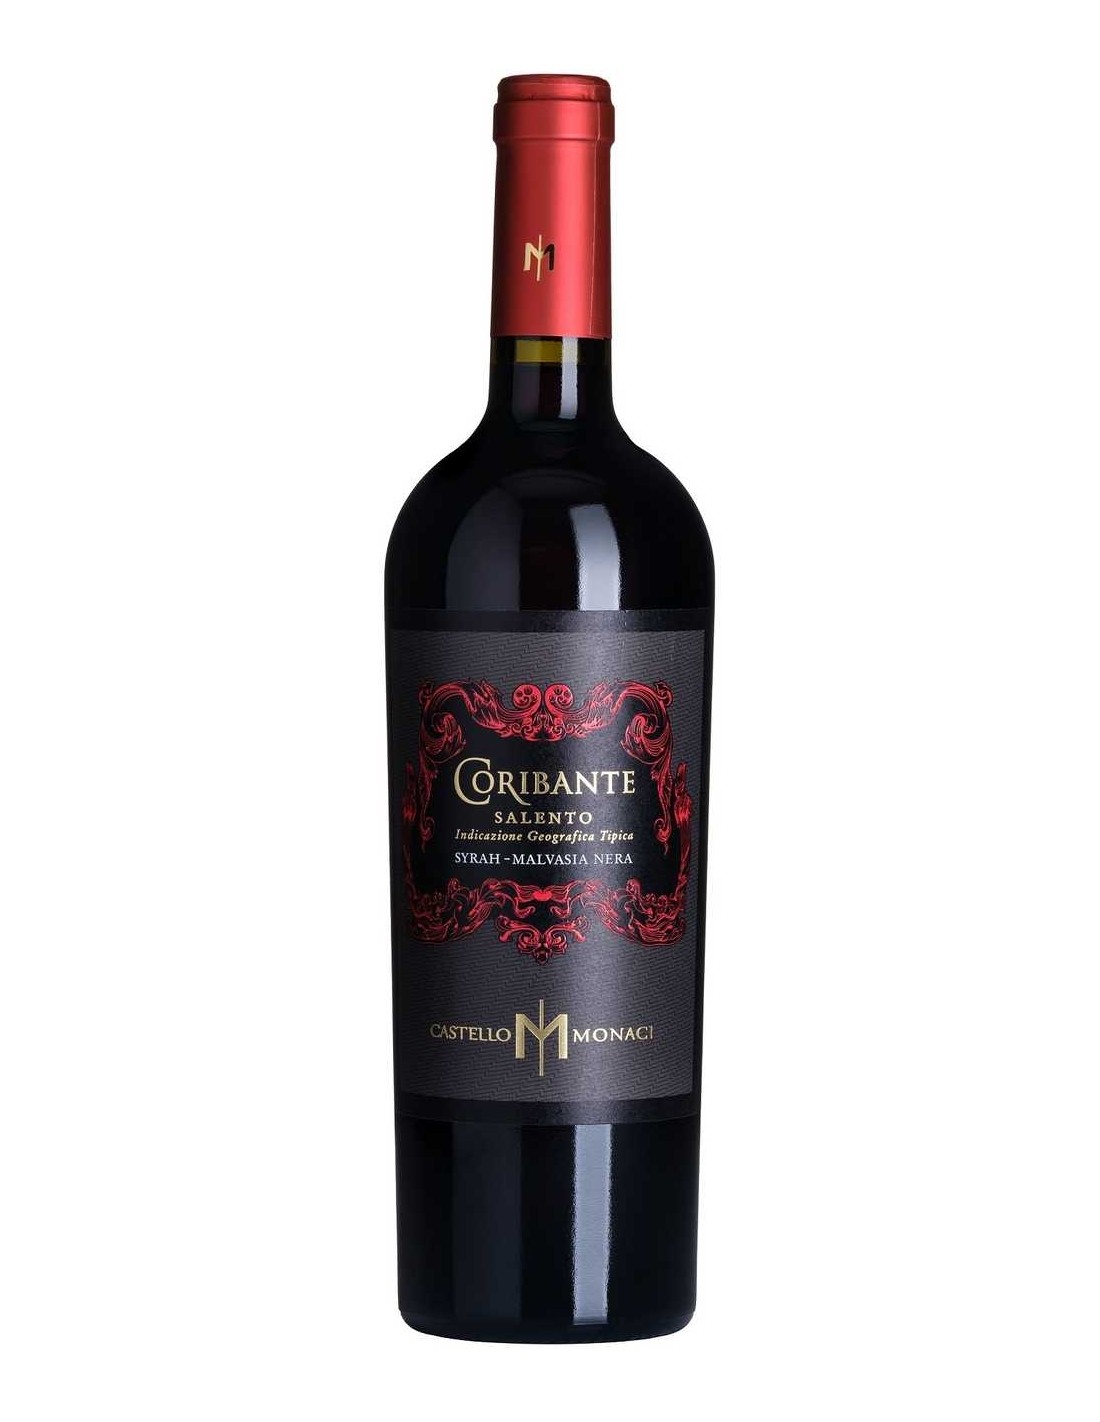 Vin rosu sec, Castello Monaci Coribante Salento, 14.5% alc., 0.75L, Italia alcooldiscount.ro